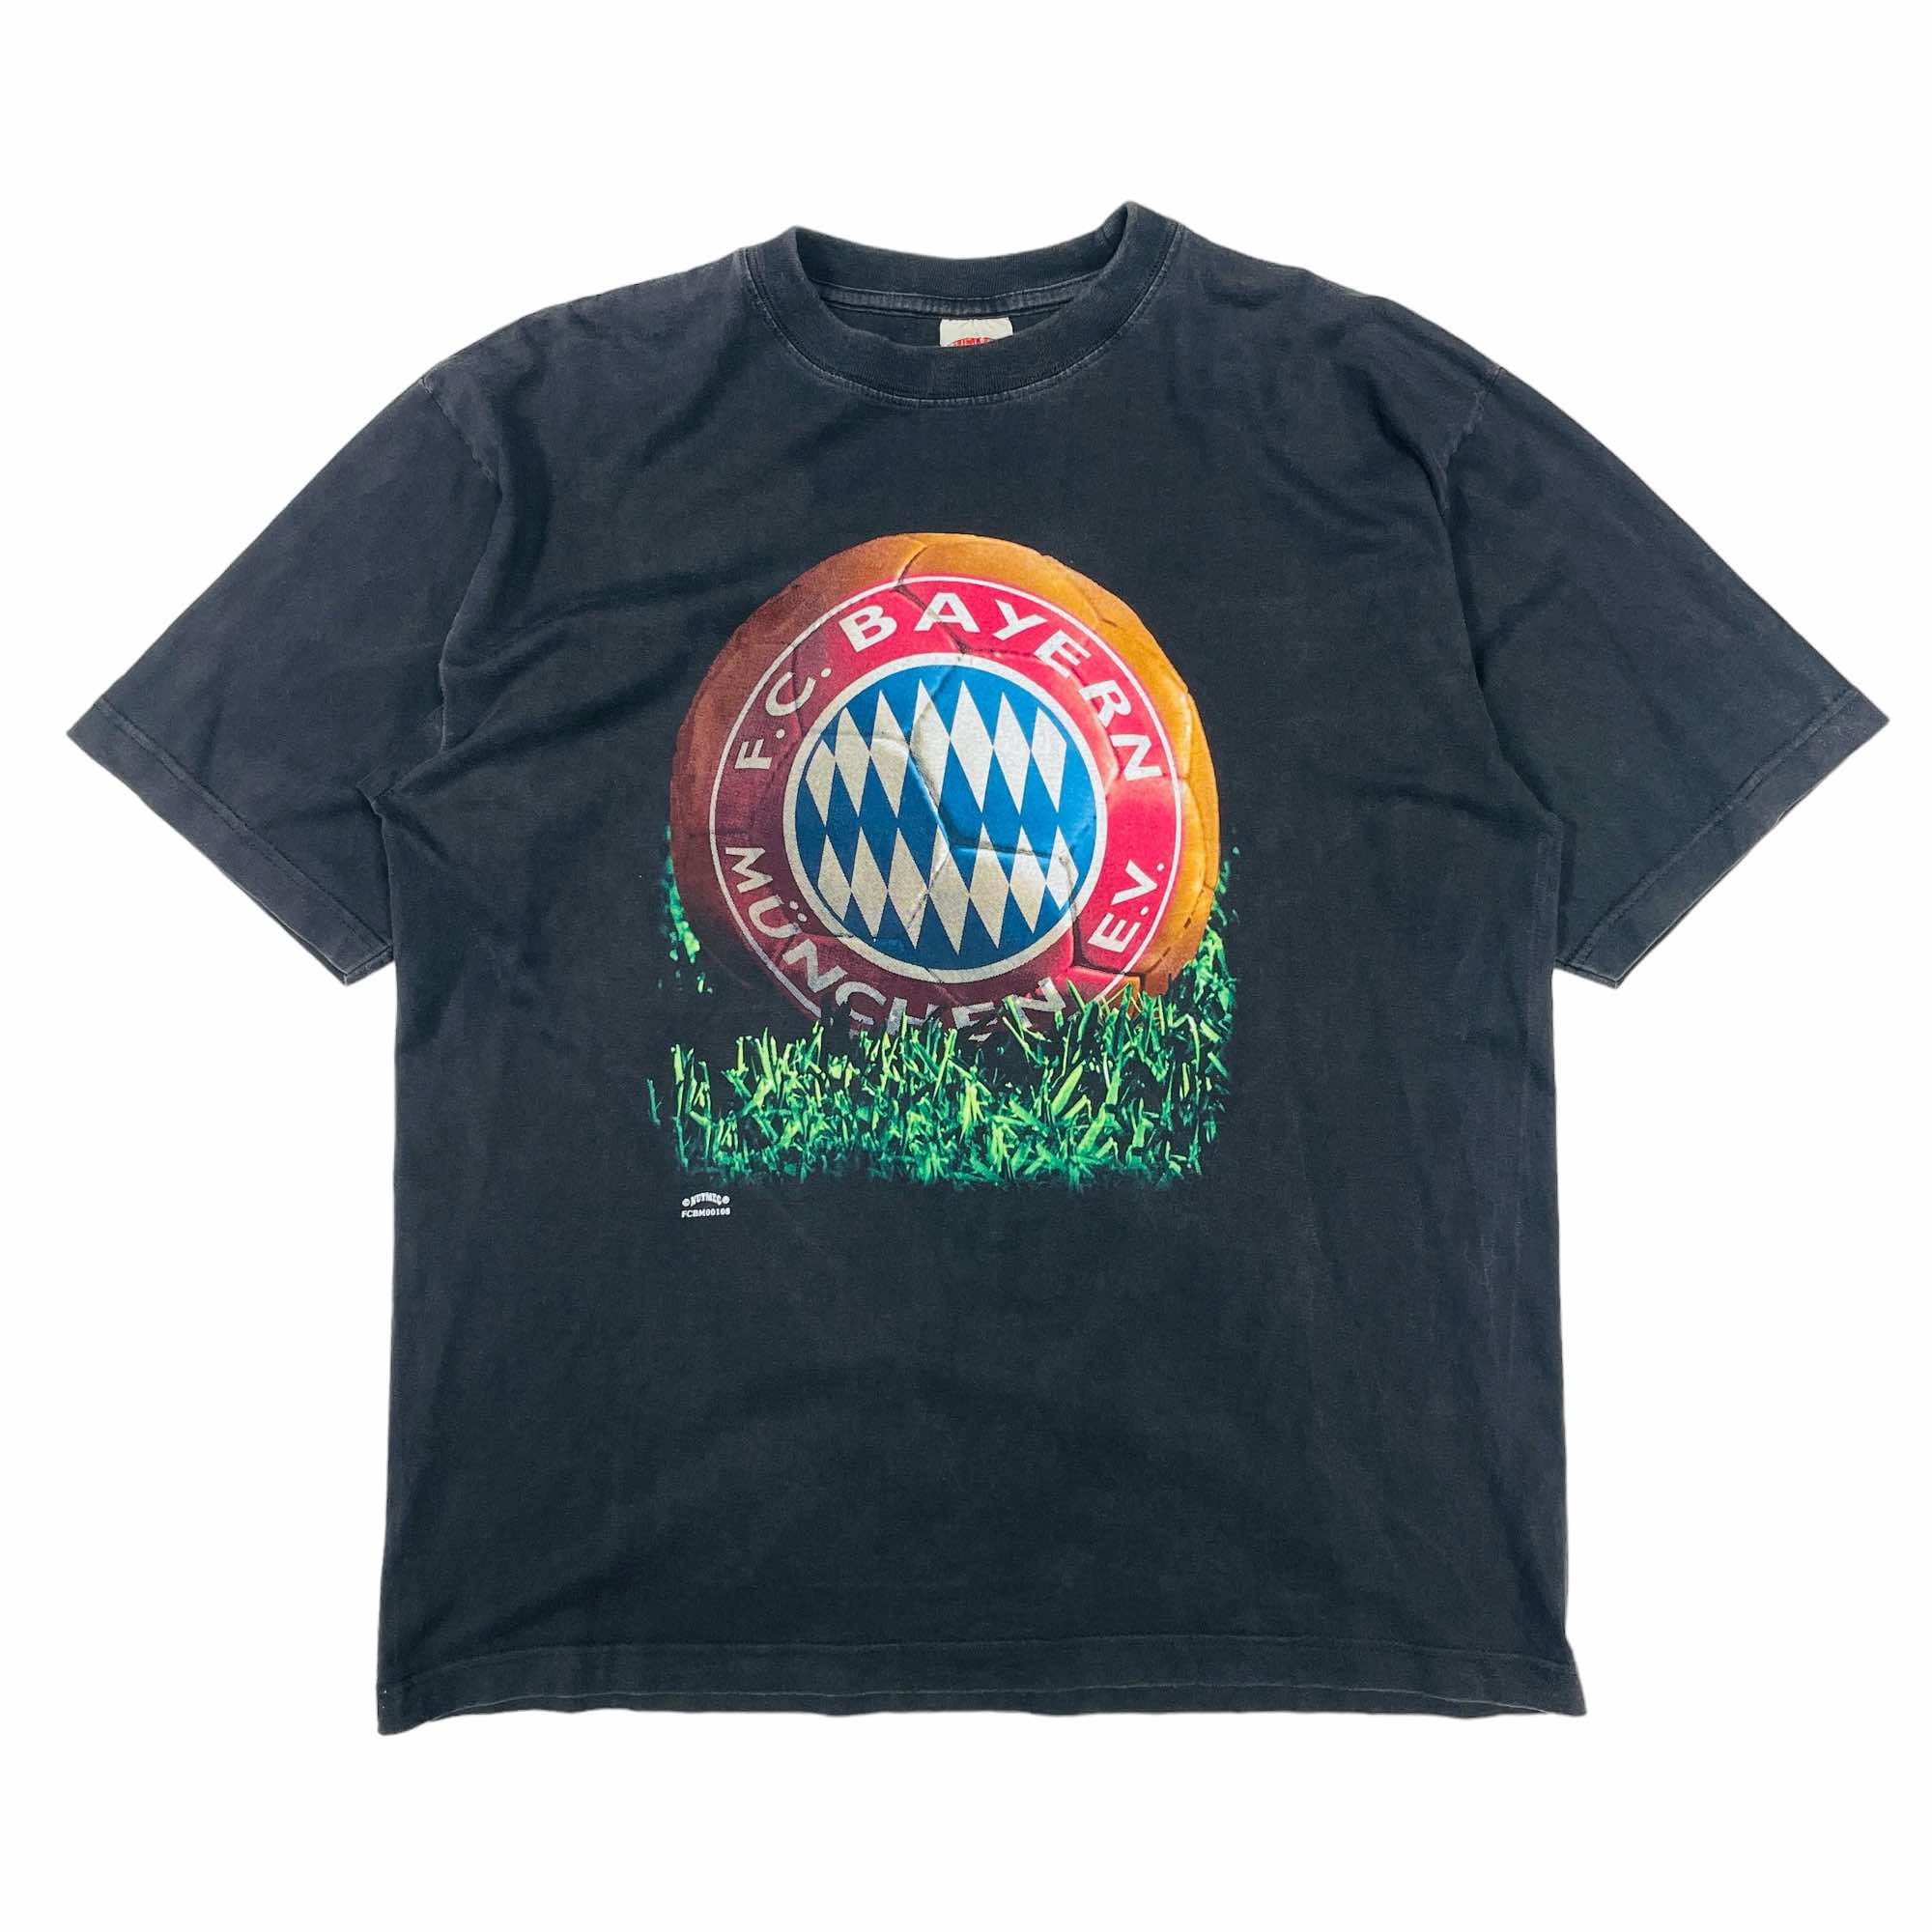 90s Bayern Munich Graphic T-Shirt - XL